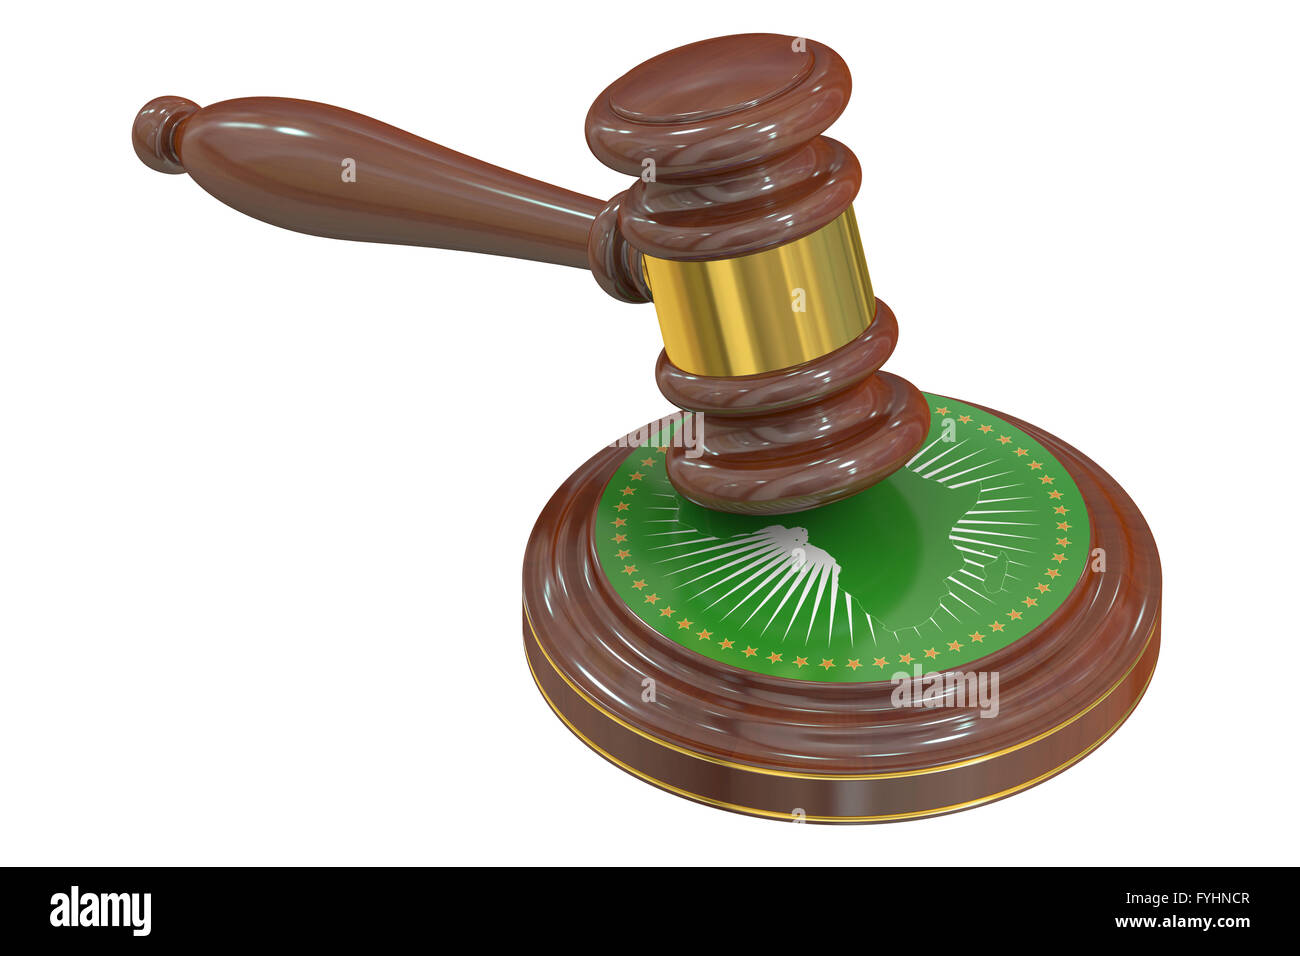 La Corte africana de Justicia concepto, 3D rendering Foto de stock